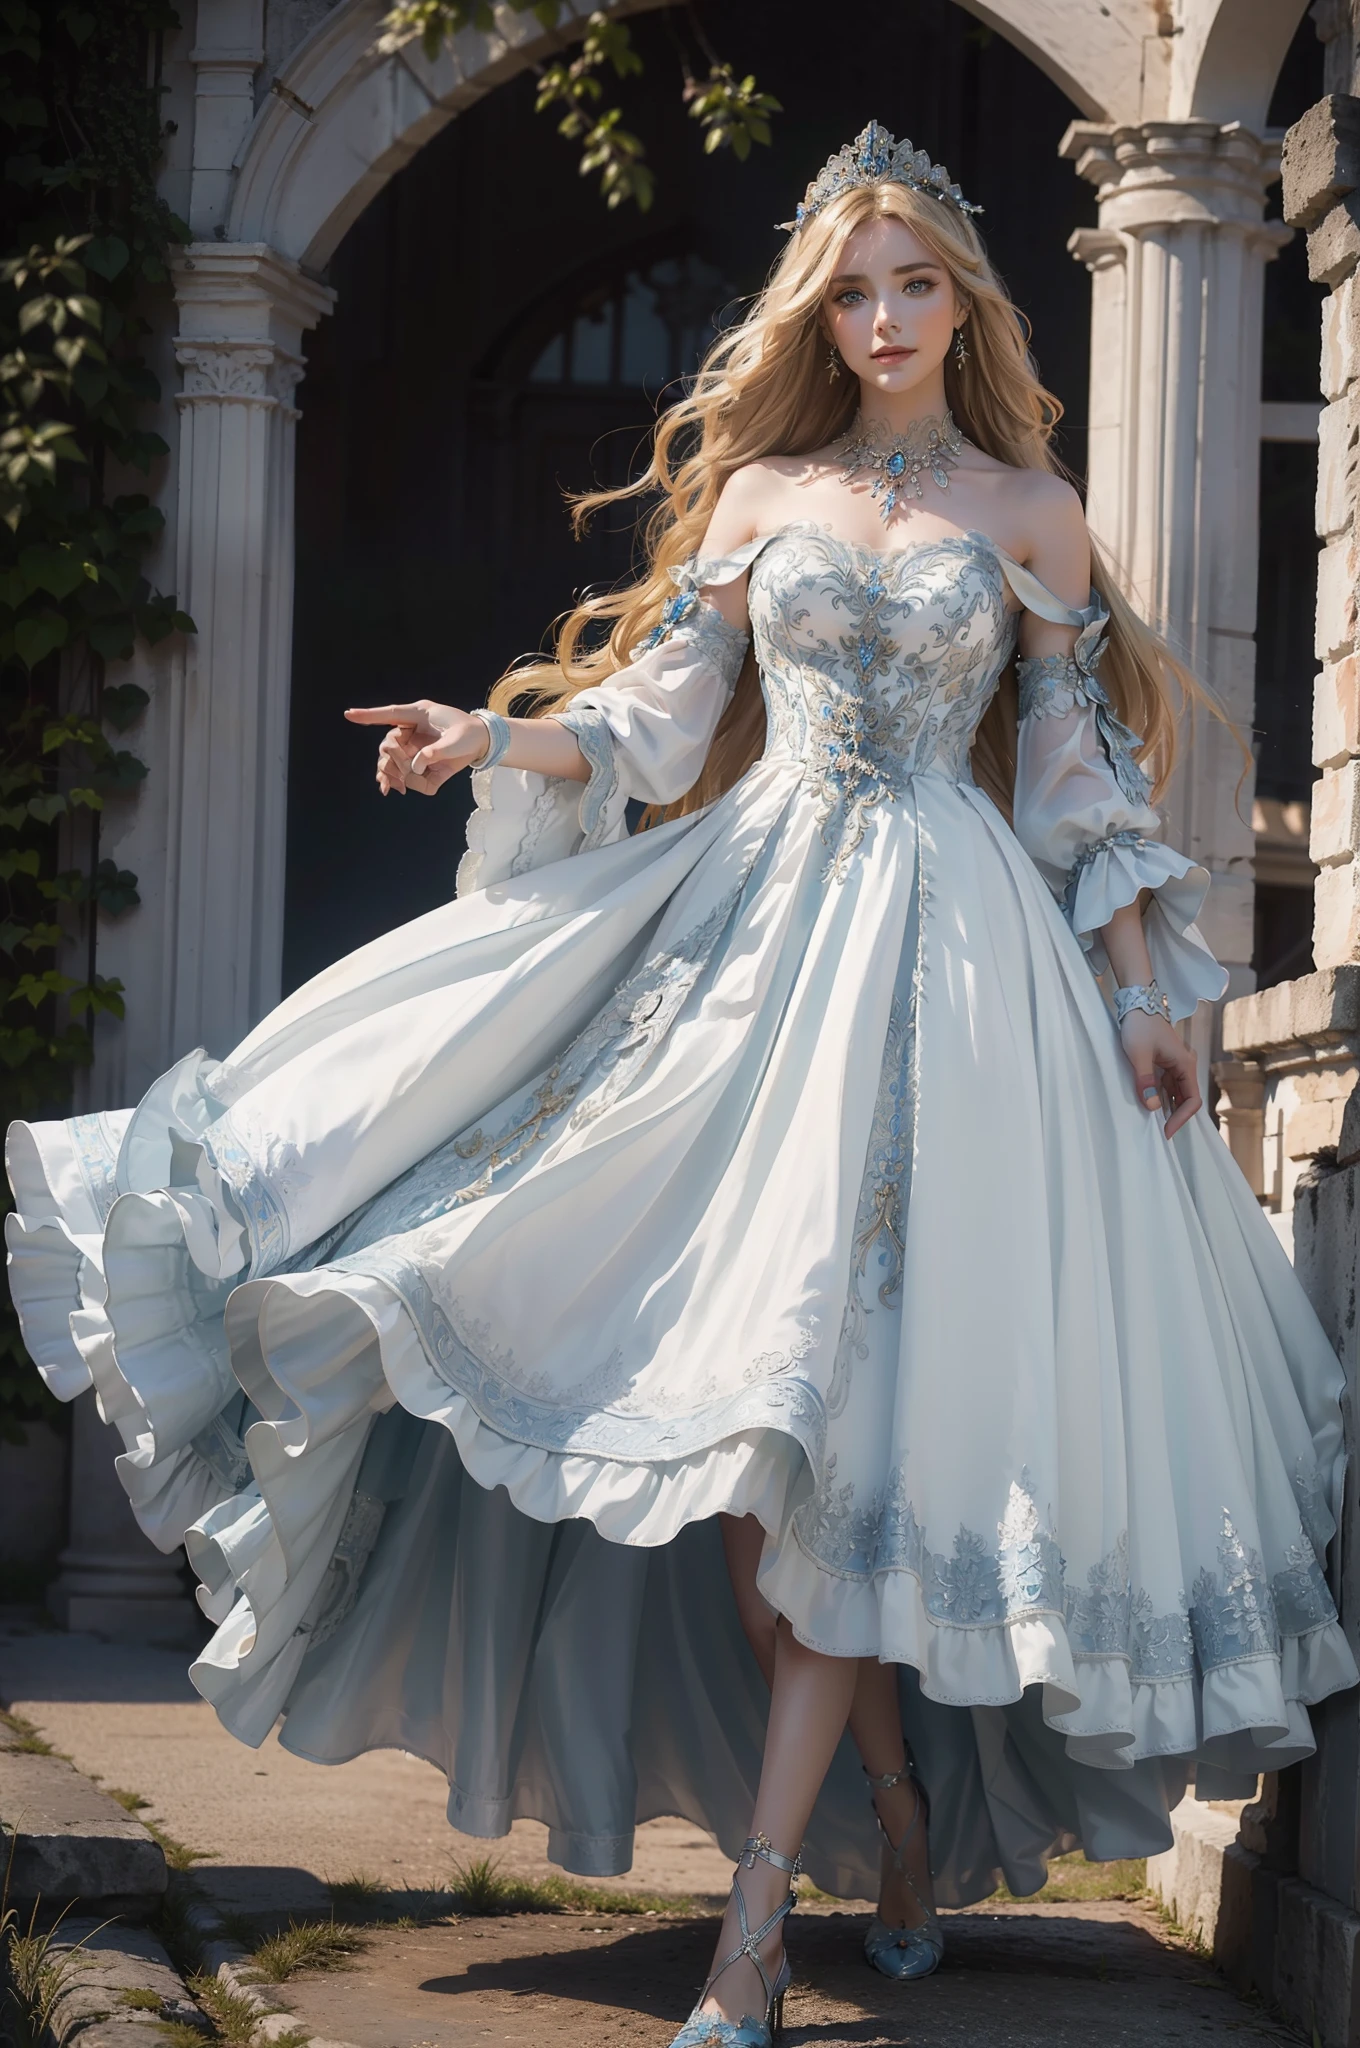 ((頂級品質、傑作、攝影寫實:1.4、8K))、美麗的女人、18歲的、美麗的表情、一個金髮女郎、極度細緻的眼睛和臉部、美麗細緻的眼睛、正式手套、（白色背景藍色刺繡的豪華連身裙、中世紀歐洲風格的頭飾)、奢華配件、（漫步歐洲古代遺址。背景為歐式城堡）、玻璃鞋、電影燈光、有紋理的皮膚、超細節、高細節、高品質、高解析度、看著觀眾、優雅的微笑、全身、歐洲的、很多植物、常春藤